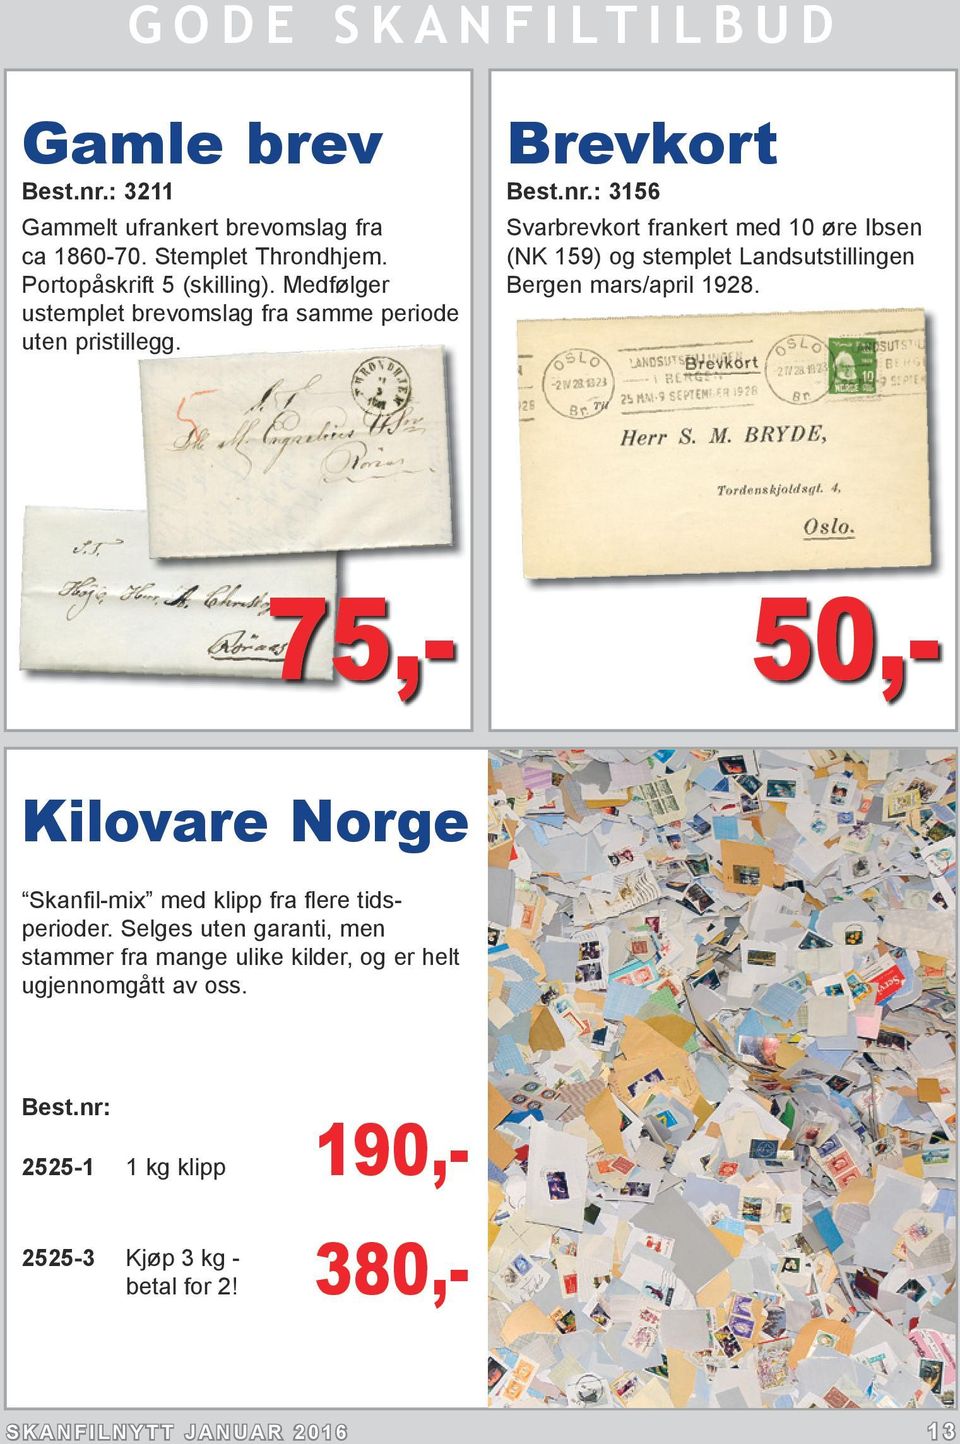 : 3156 Svarbrevkort frankert med 10 øre Ibsen (NK 159) og stemplet Landsutstillingen Bergen mars/april 1928.